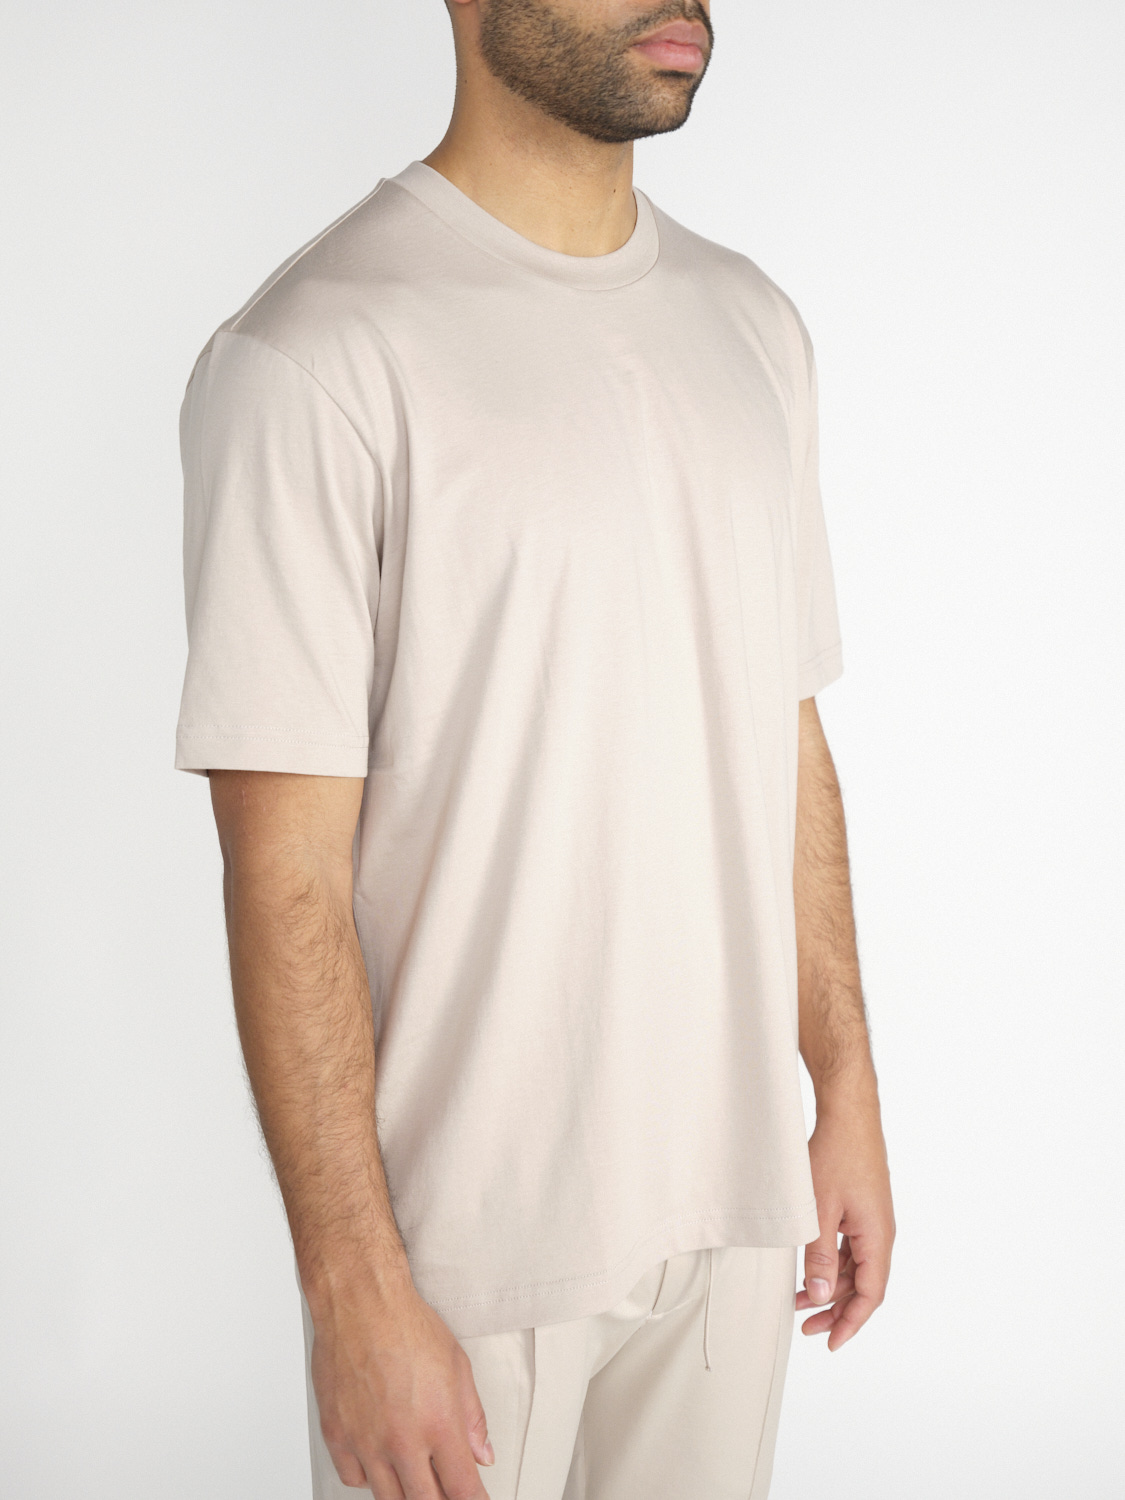 Stefan Brandt Eli 30 – cotton shirt  beige M